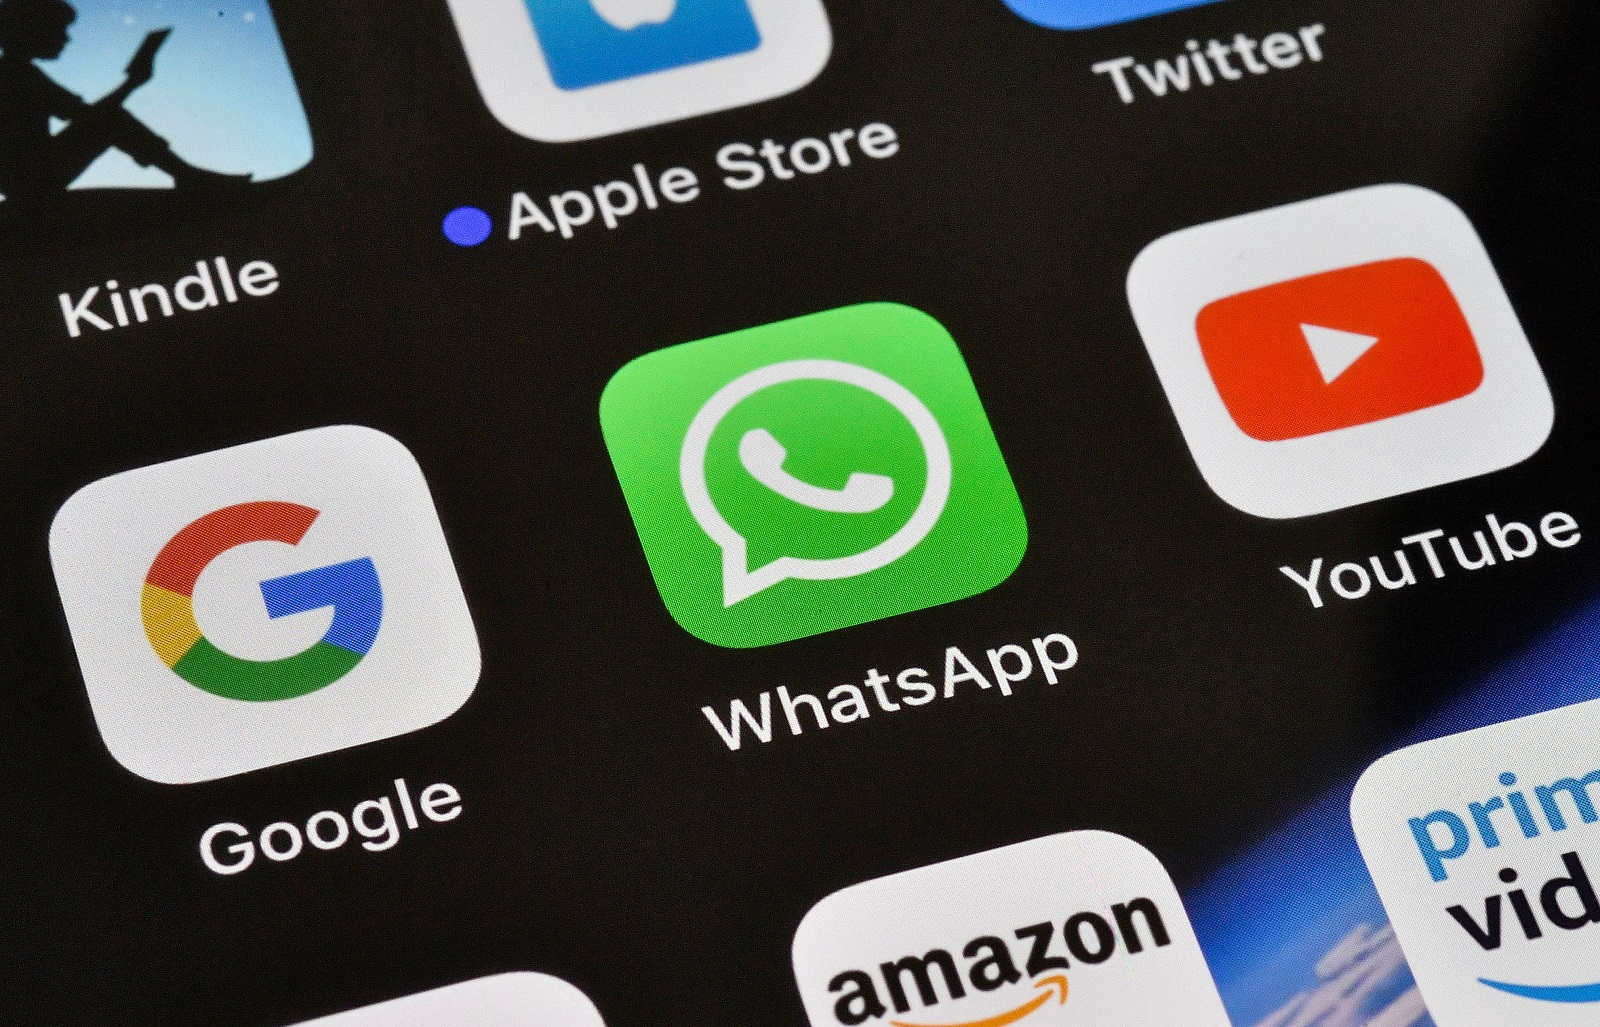 WhatsApp durumu için Facebook entegrasyonu geliyor